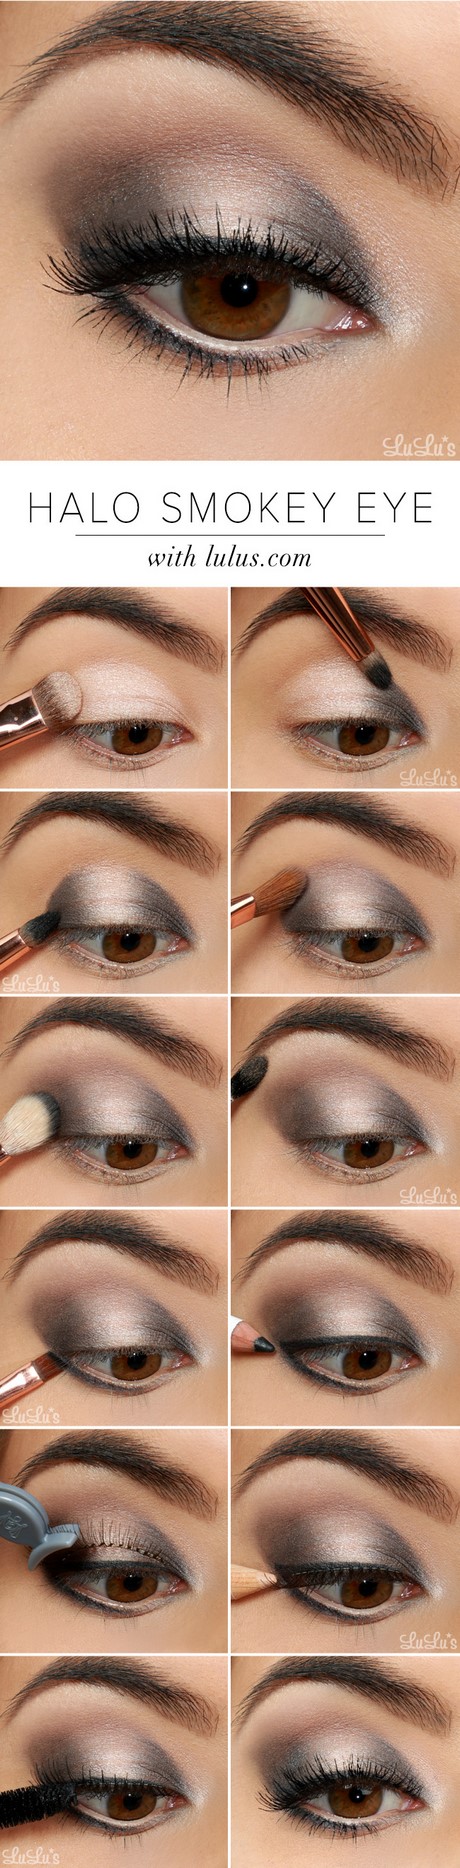 Make - up tutorial voor beginners smokey eyes